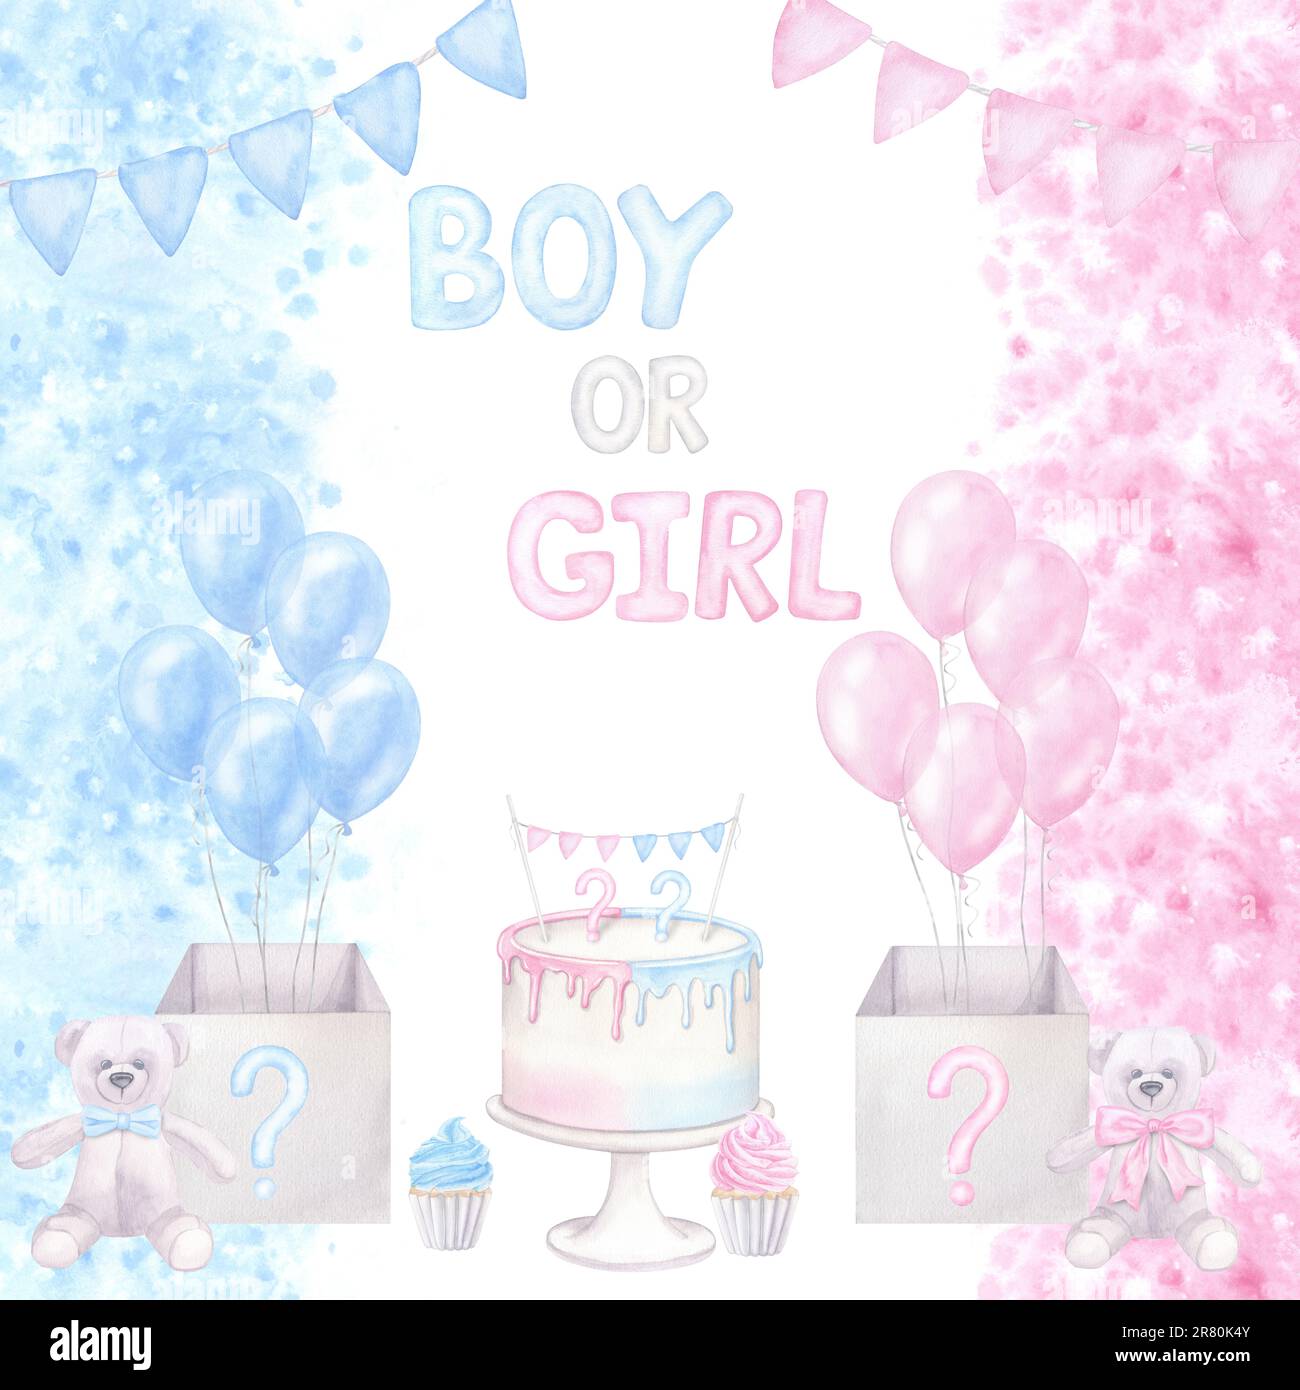 Die pinkfarbene blaue Karte zeigt das Geschlecht der Party-Einladung. Junge oder Mädchen, er oder sie. Ballons, Kuchen, Cupcake, Konfetti. Handgezeichnete Aquarelldarstellung isola Stockfoto